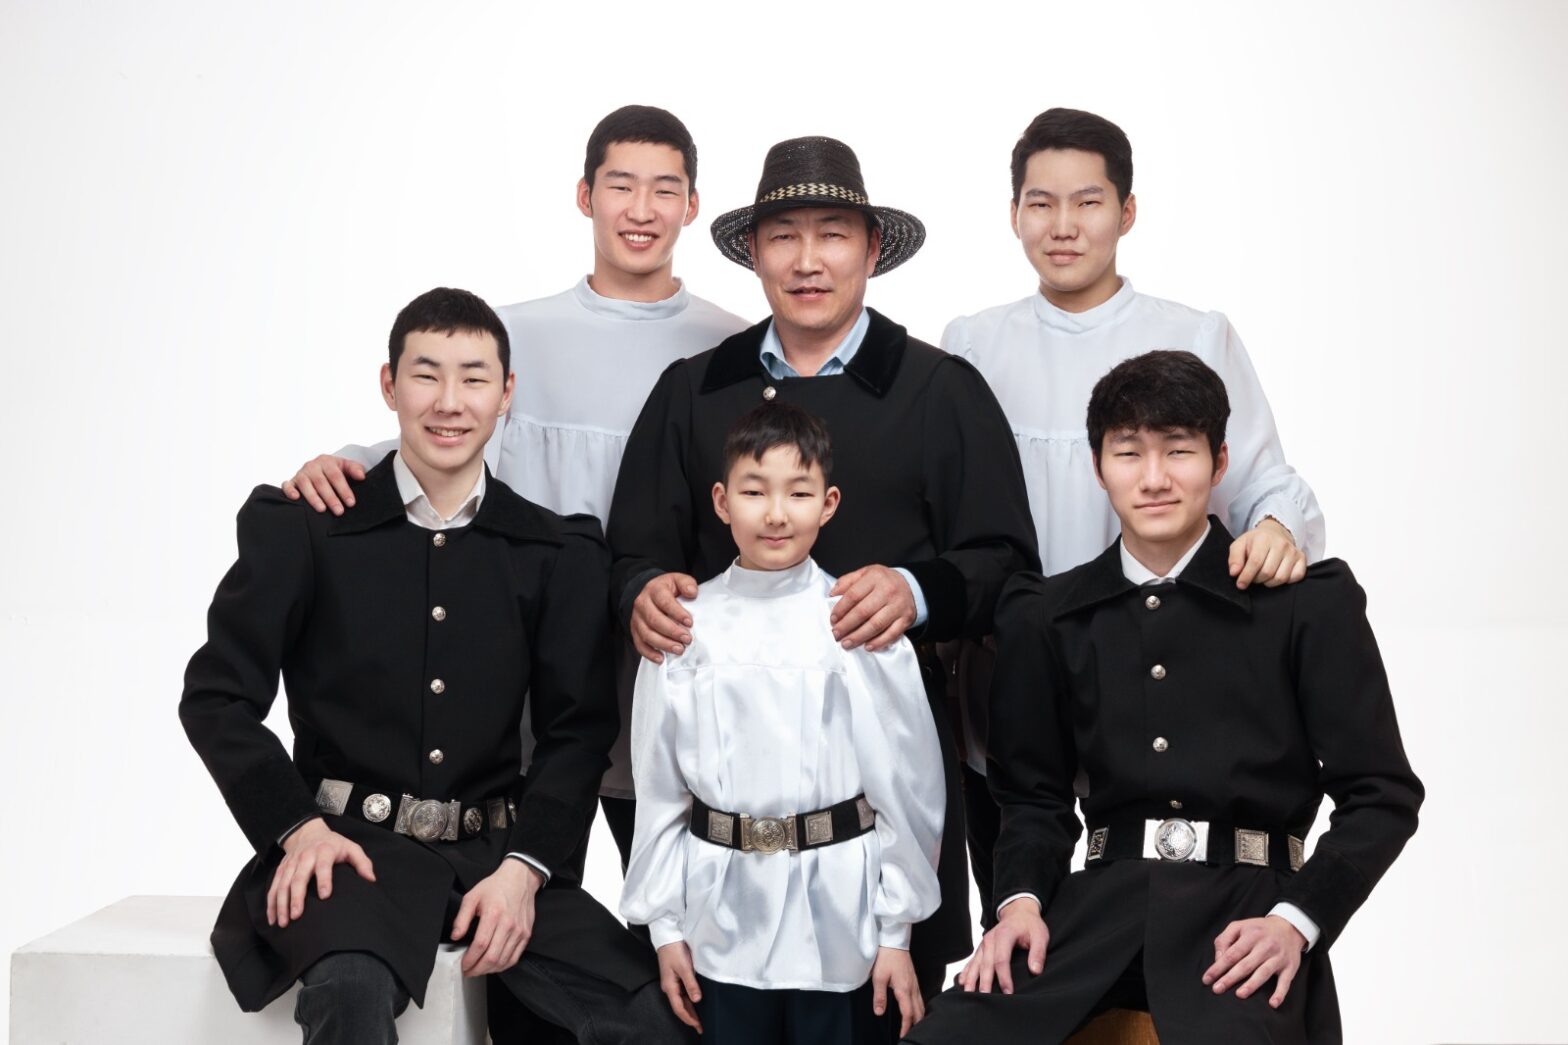 Шести отцам ежегодно будут вручать знак «Ытык а5а» в Якутии